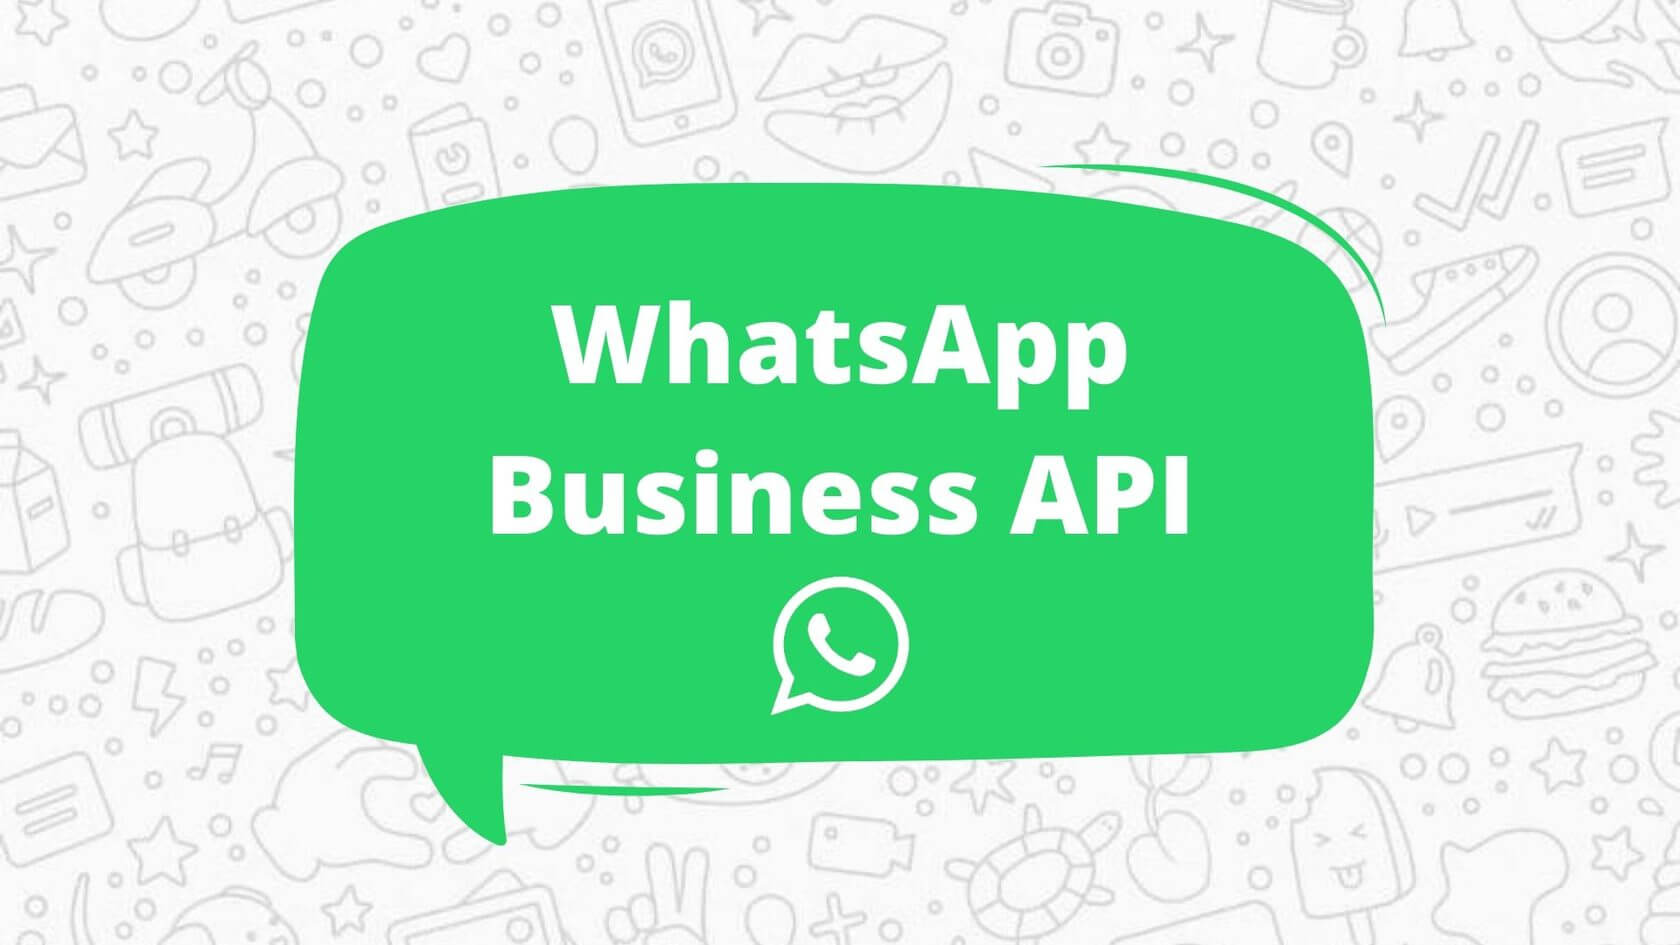 مزايا WhatsApp Business API لتبسيط التواصل مع العملاء وتعزيز المبيعات